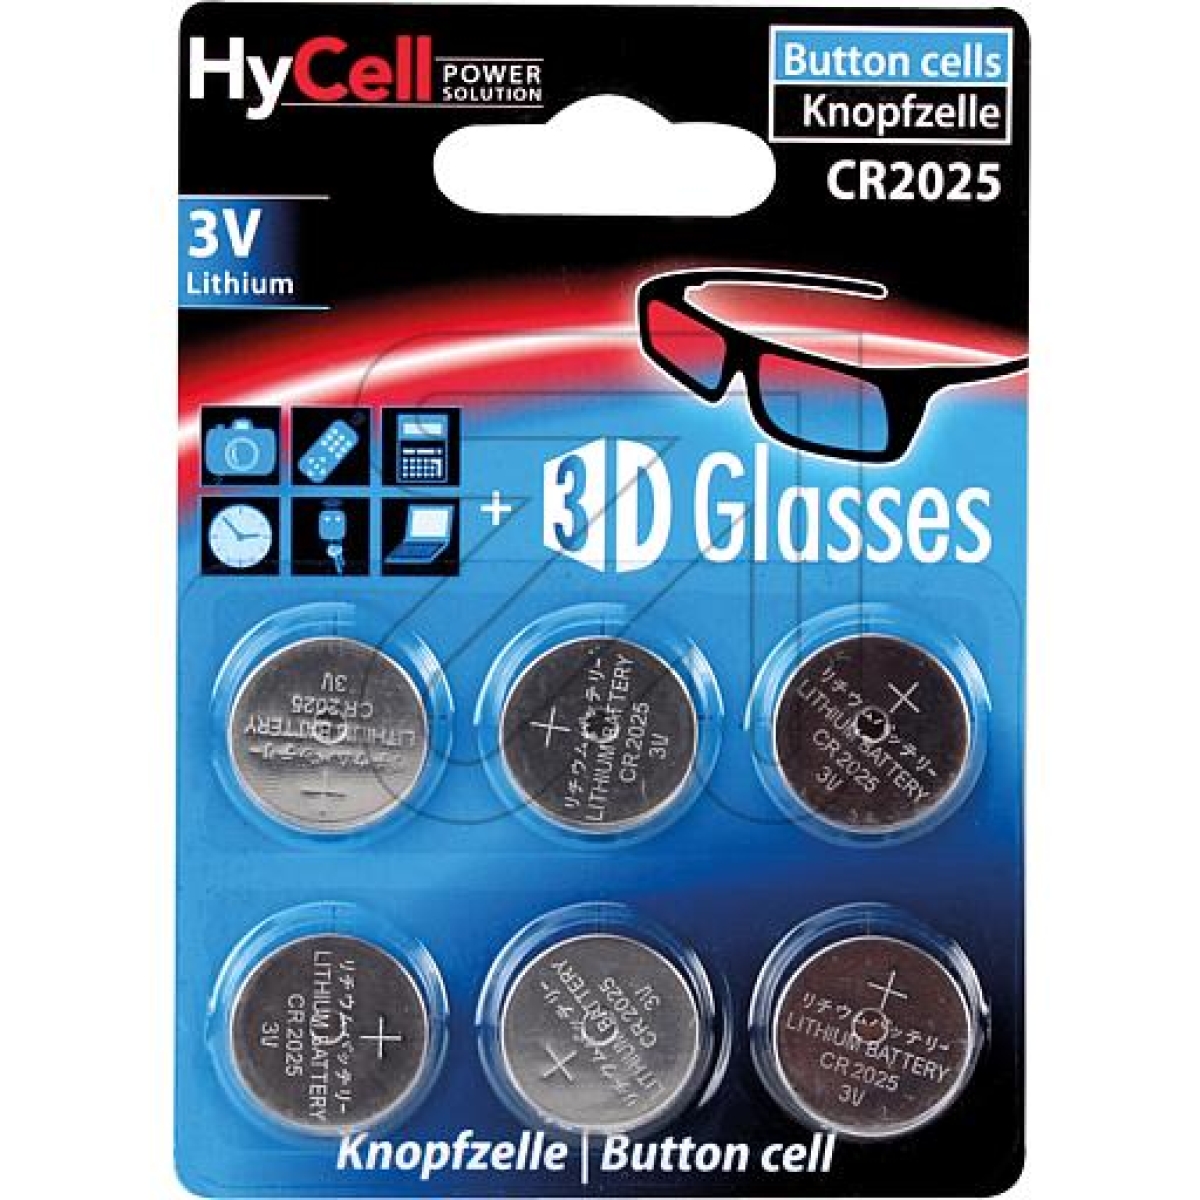 HyCellLithium-Knopfzellen CR 2025 1516-0027-Preis für 6 St.